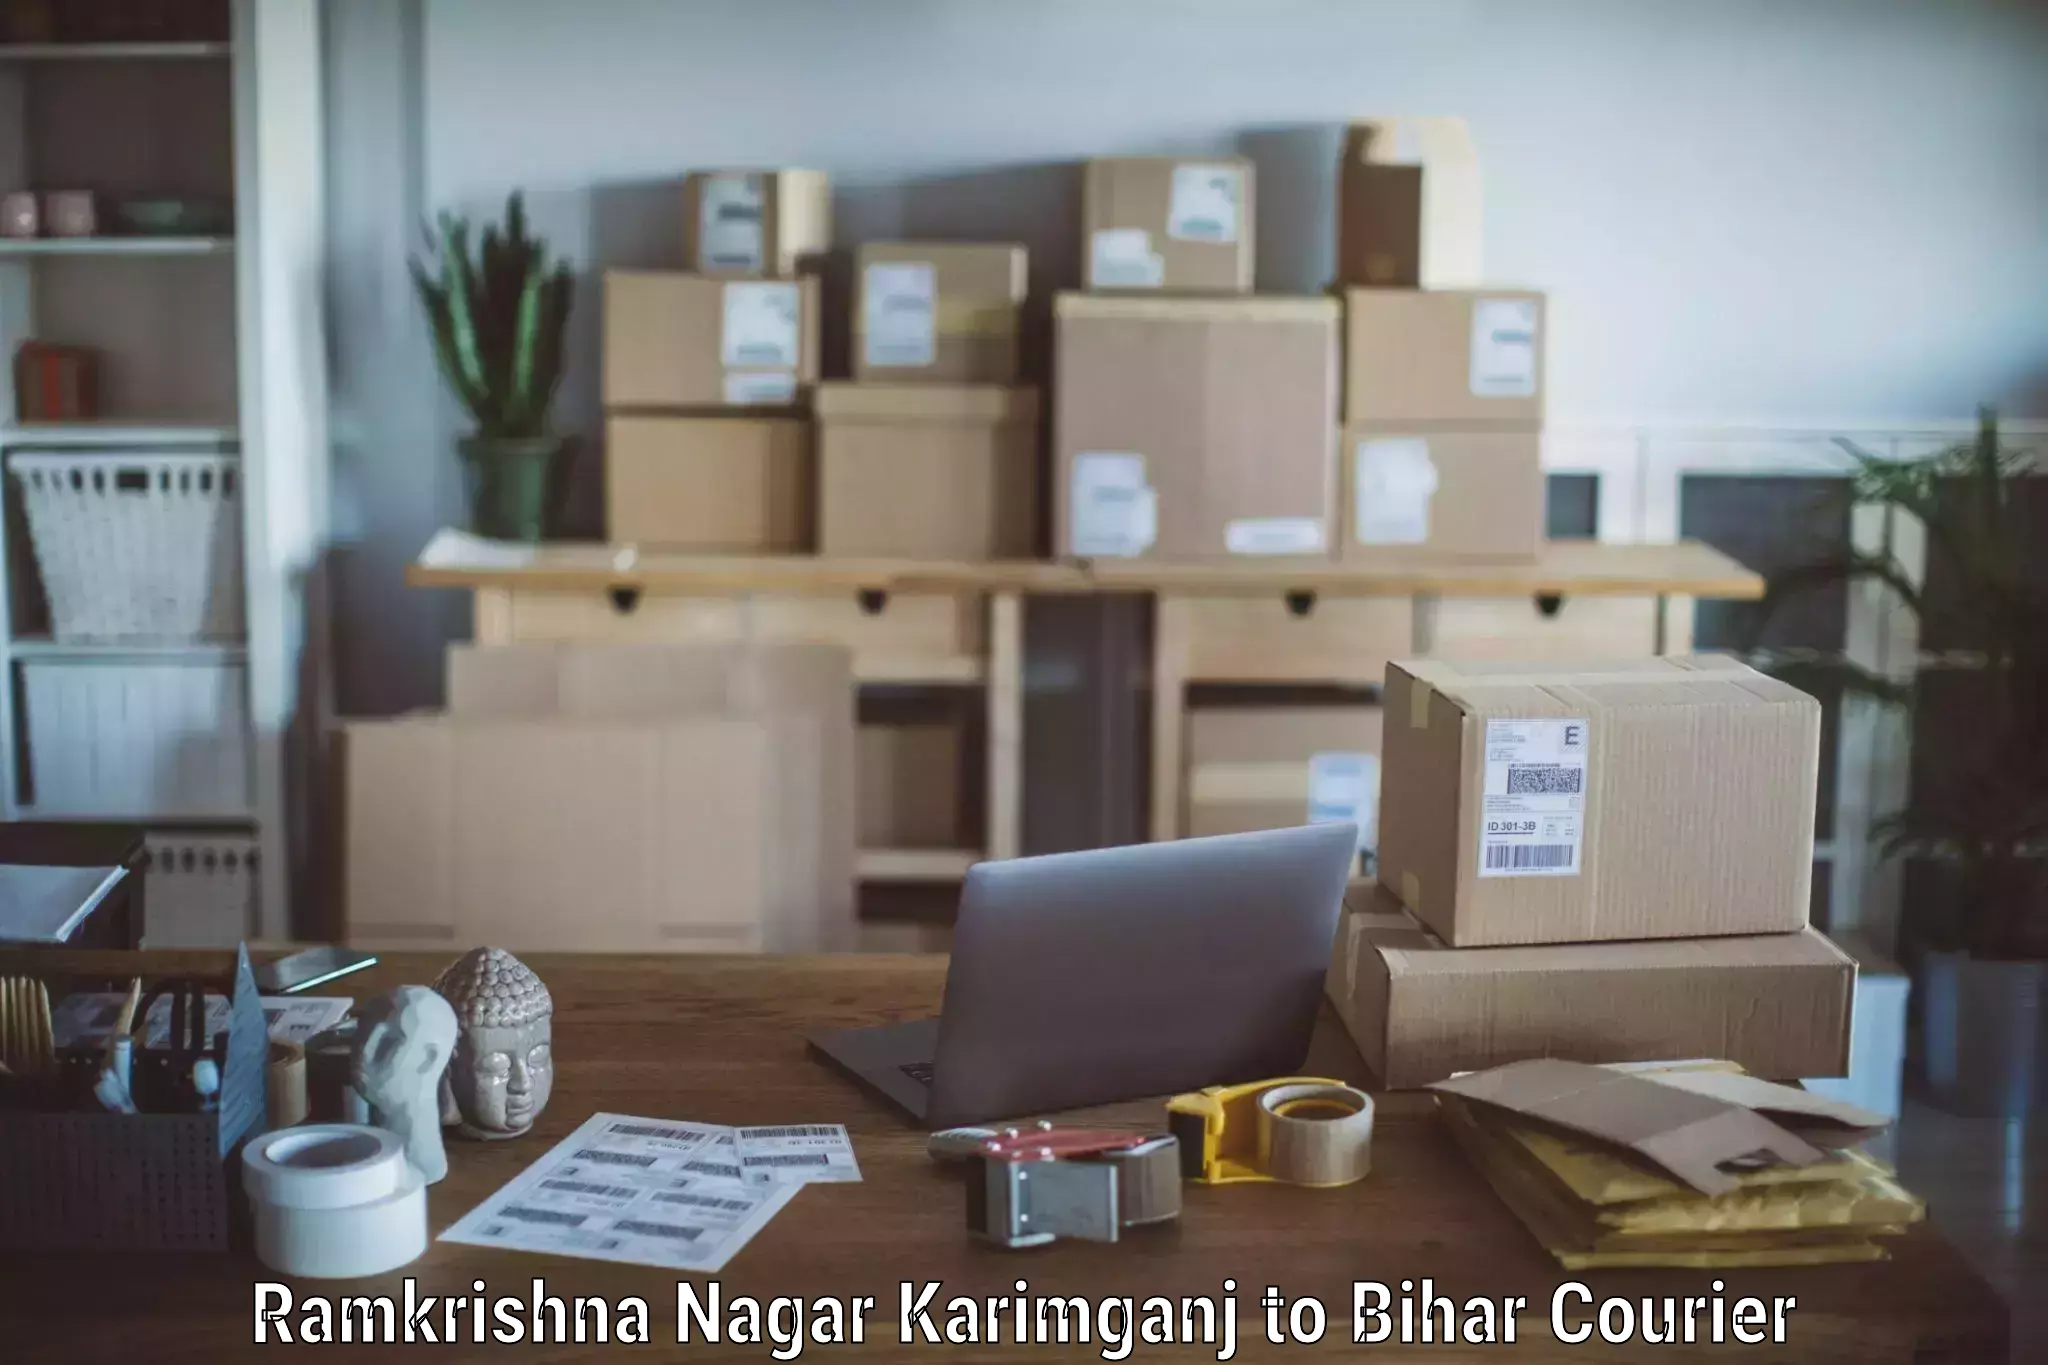 Trusted moving company Ramkrishna Nagar Karimganj to Kishunganj